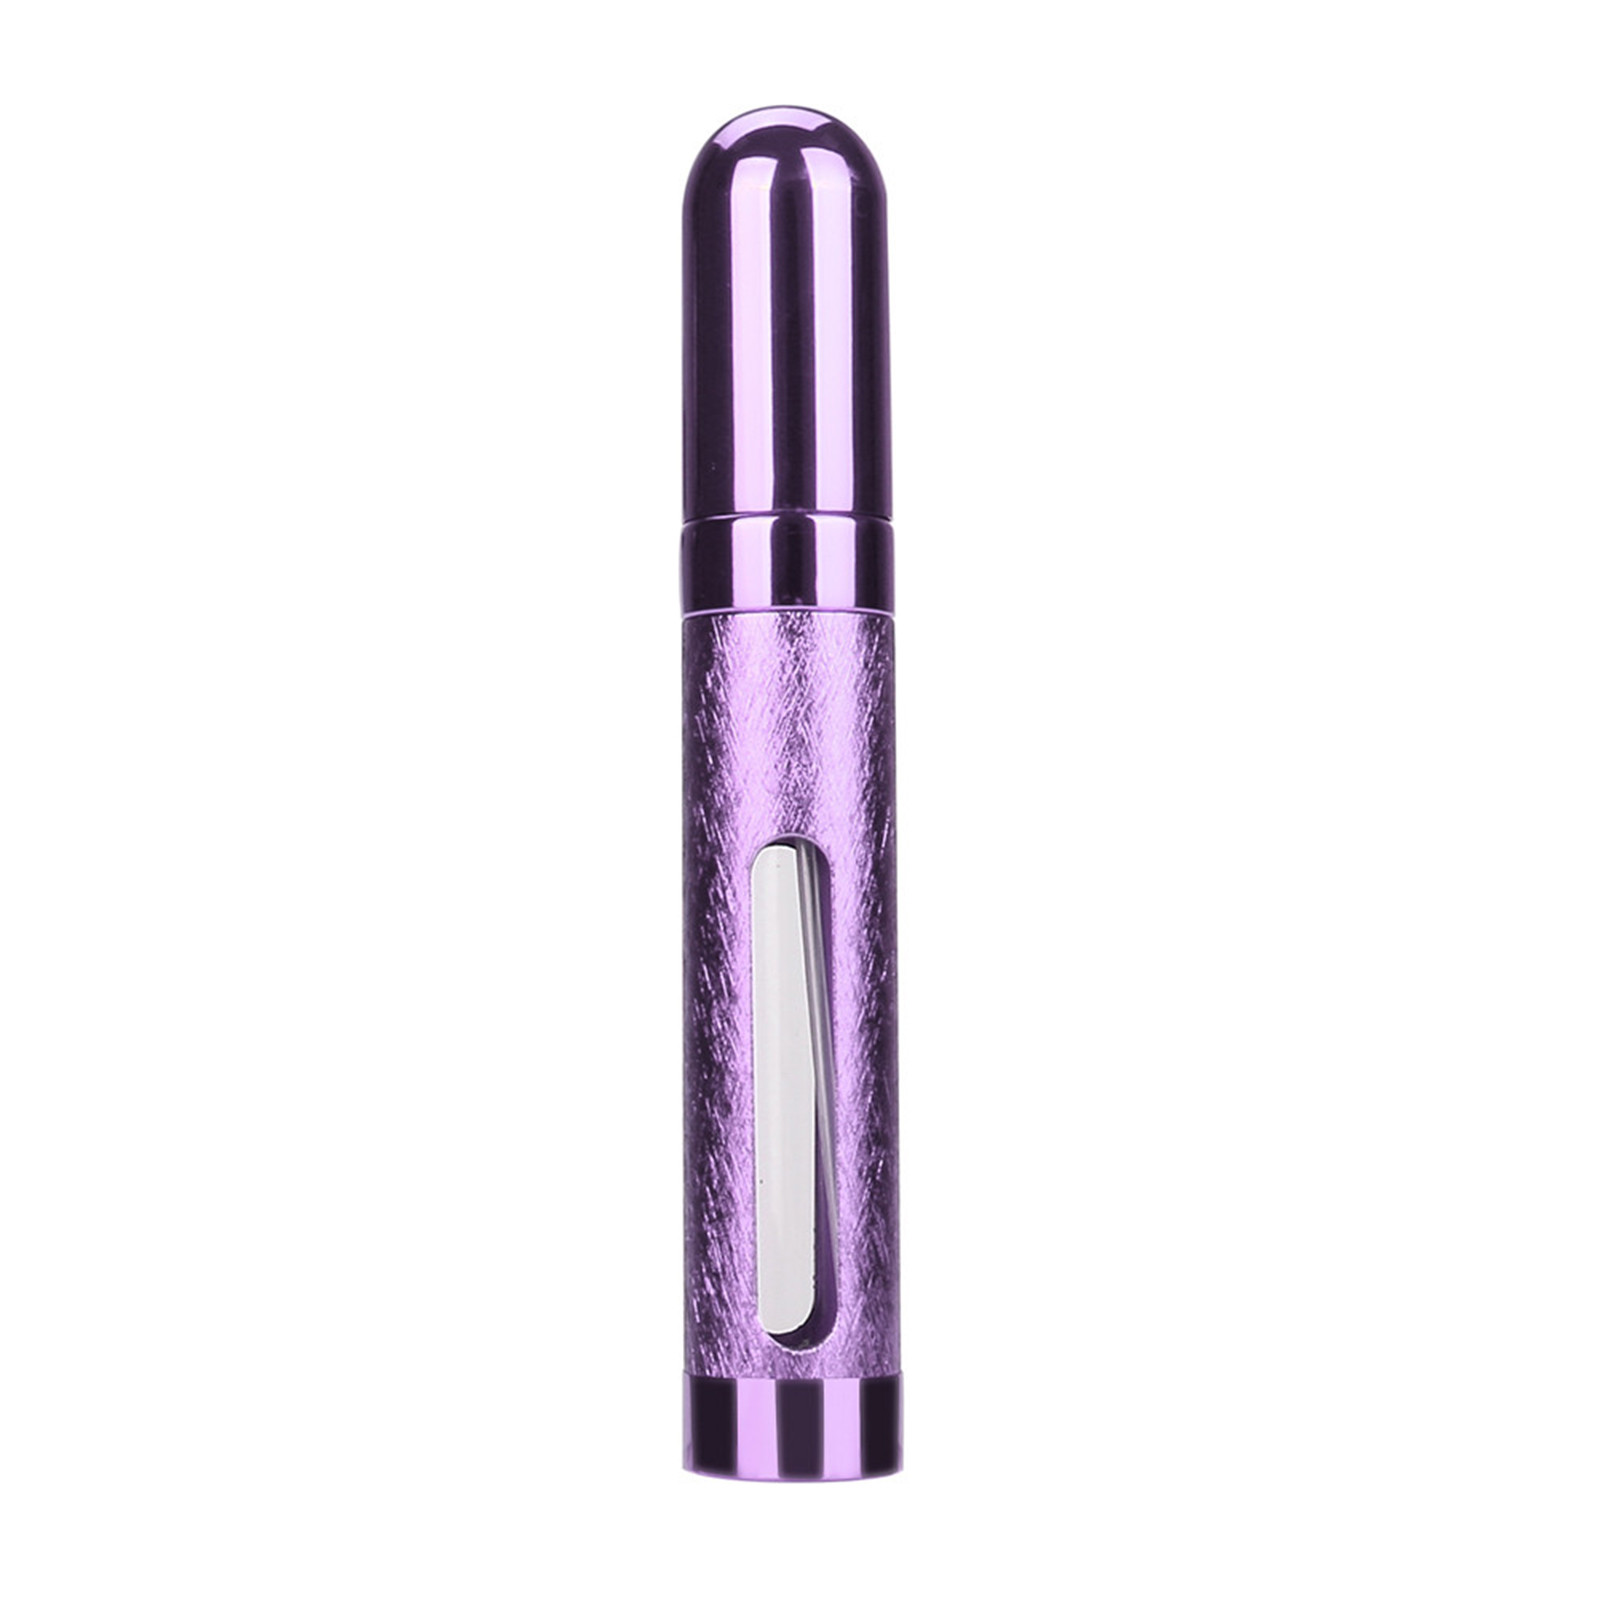 12 ml Portable Mini Refillable Parfymflaska med sprayduftpumpar Tomma kosmetiska behållare Spray Atomizer Bottle for Travel